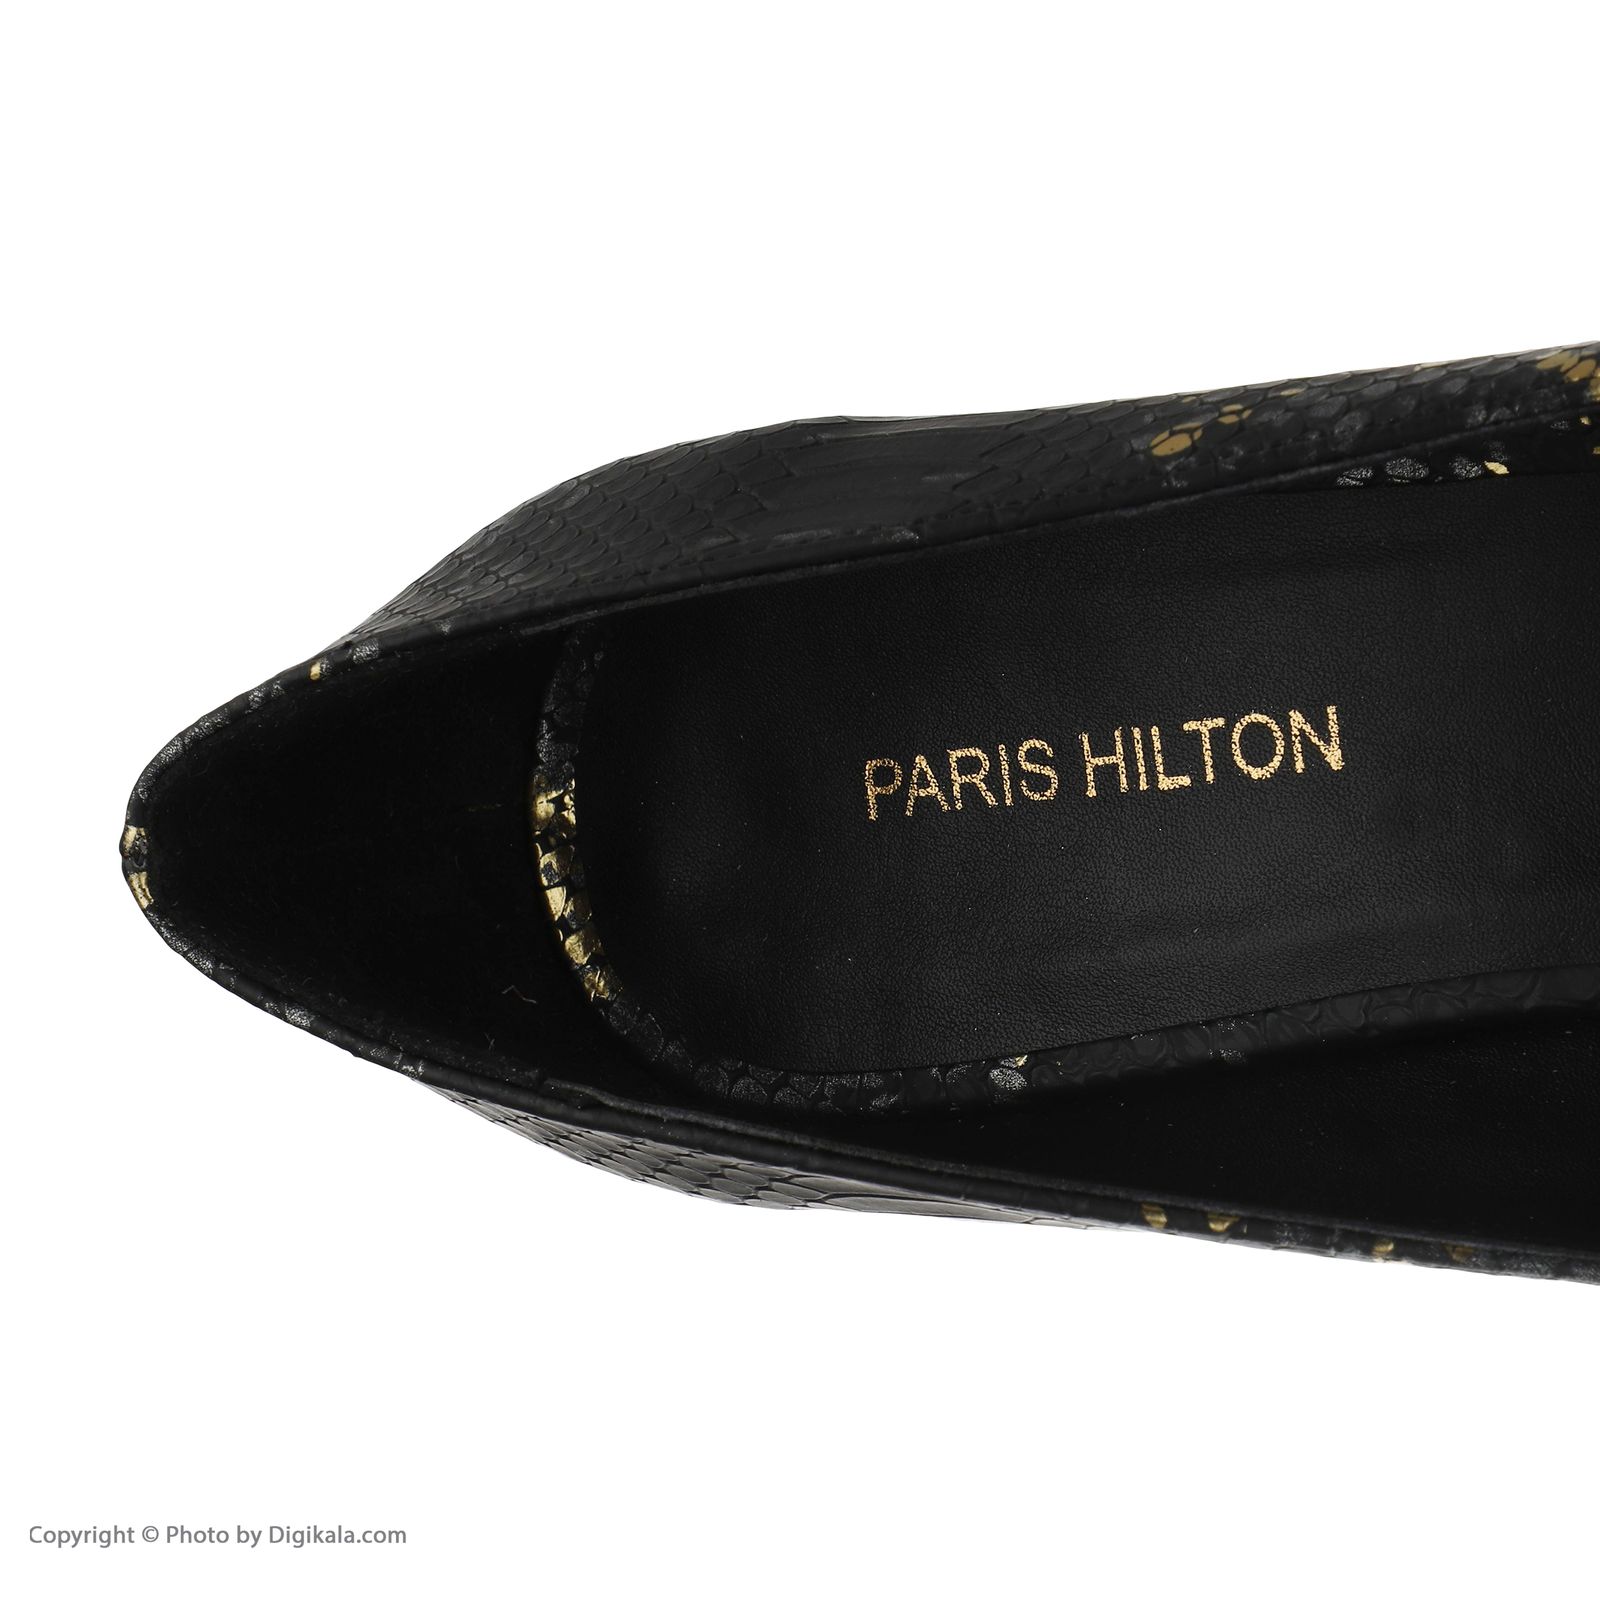 کفش زنانه پاریس هیلتون مدل پوست ماری کد psw20681 رنگ طلایی -  - 7